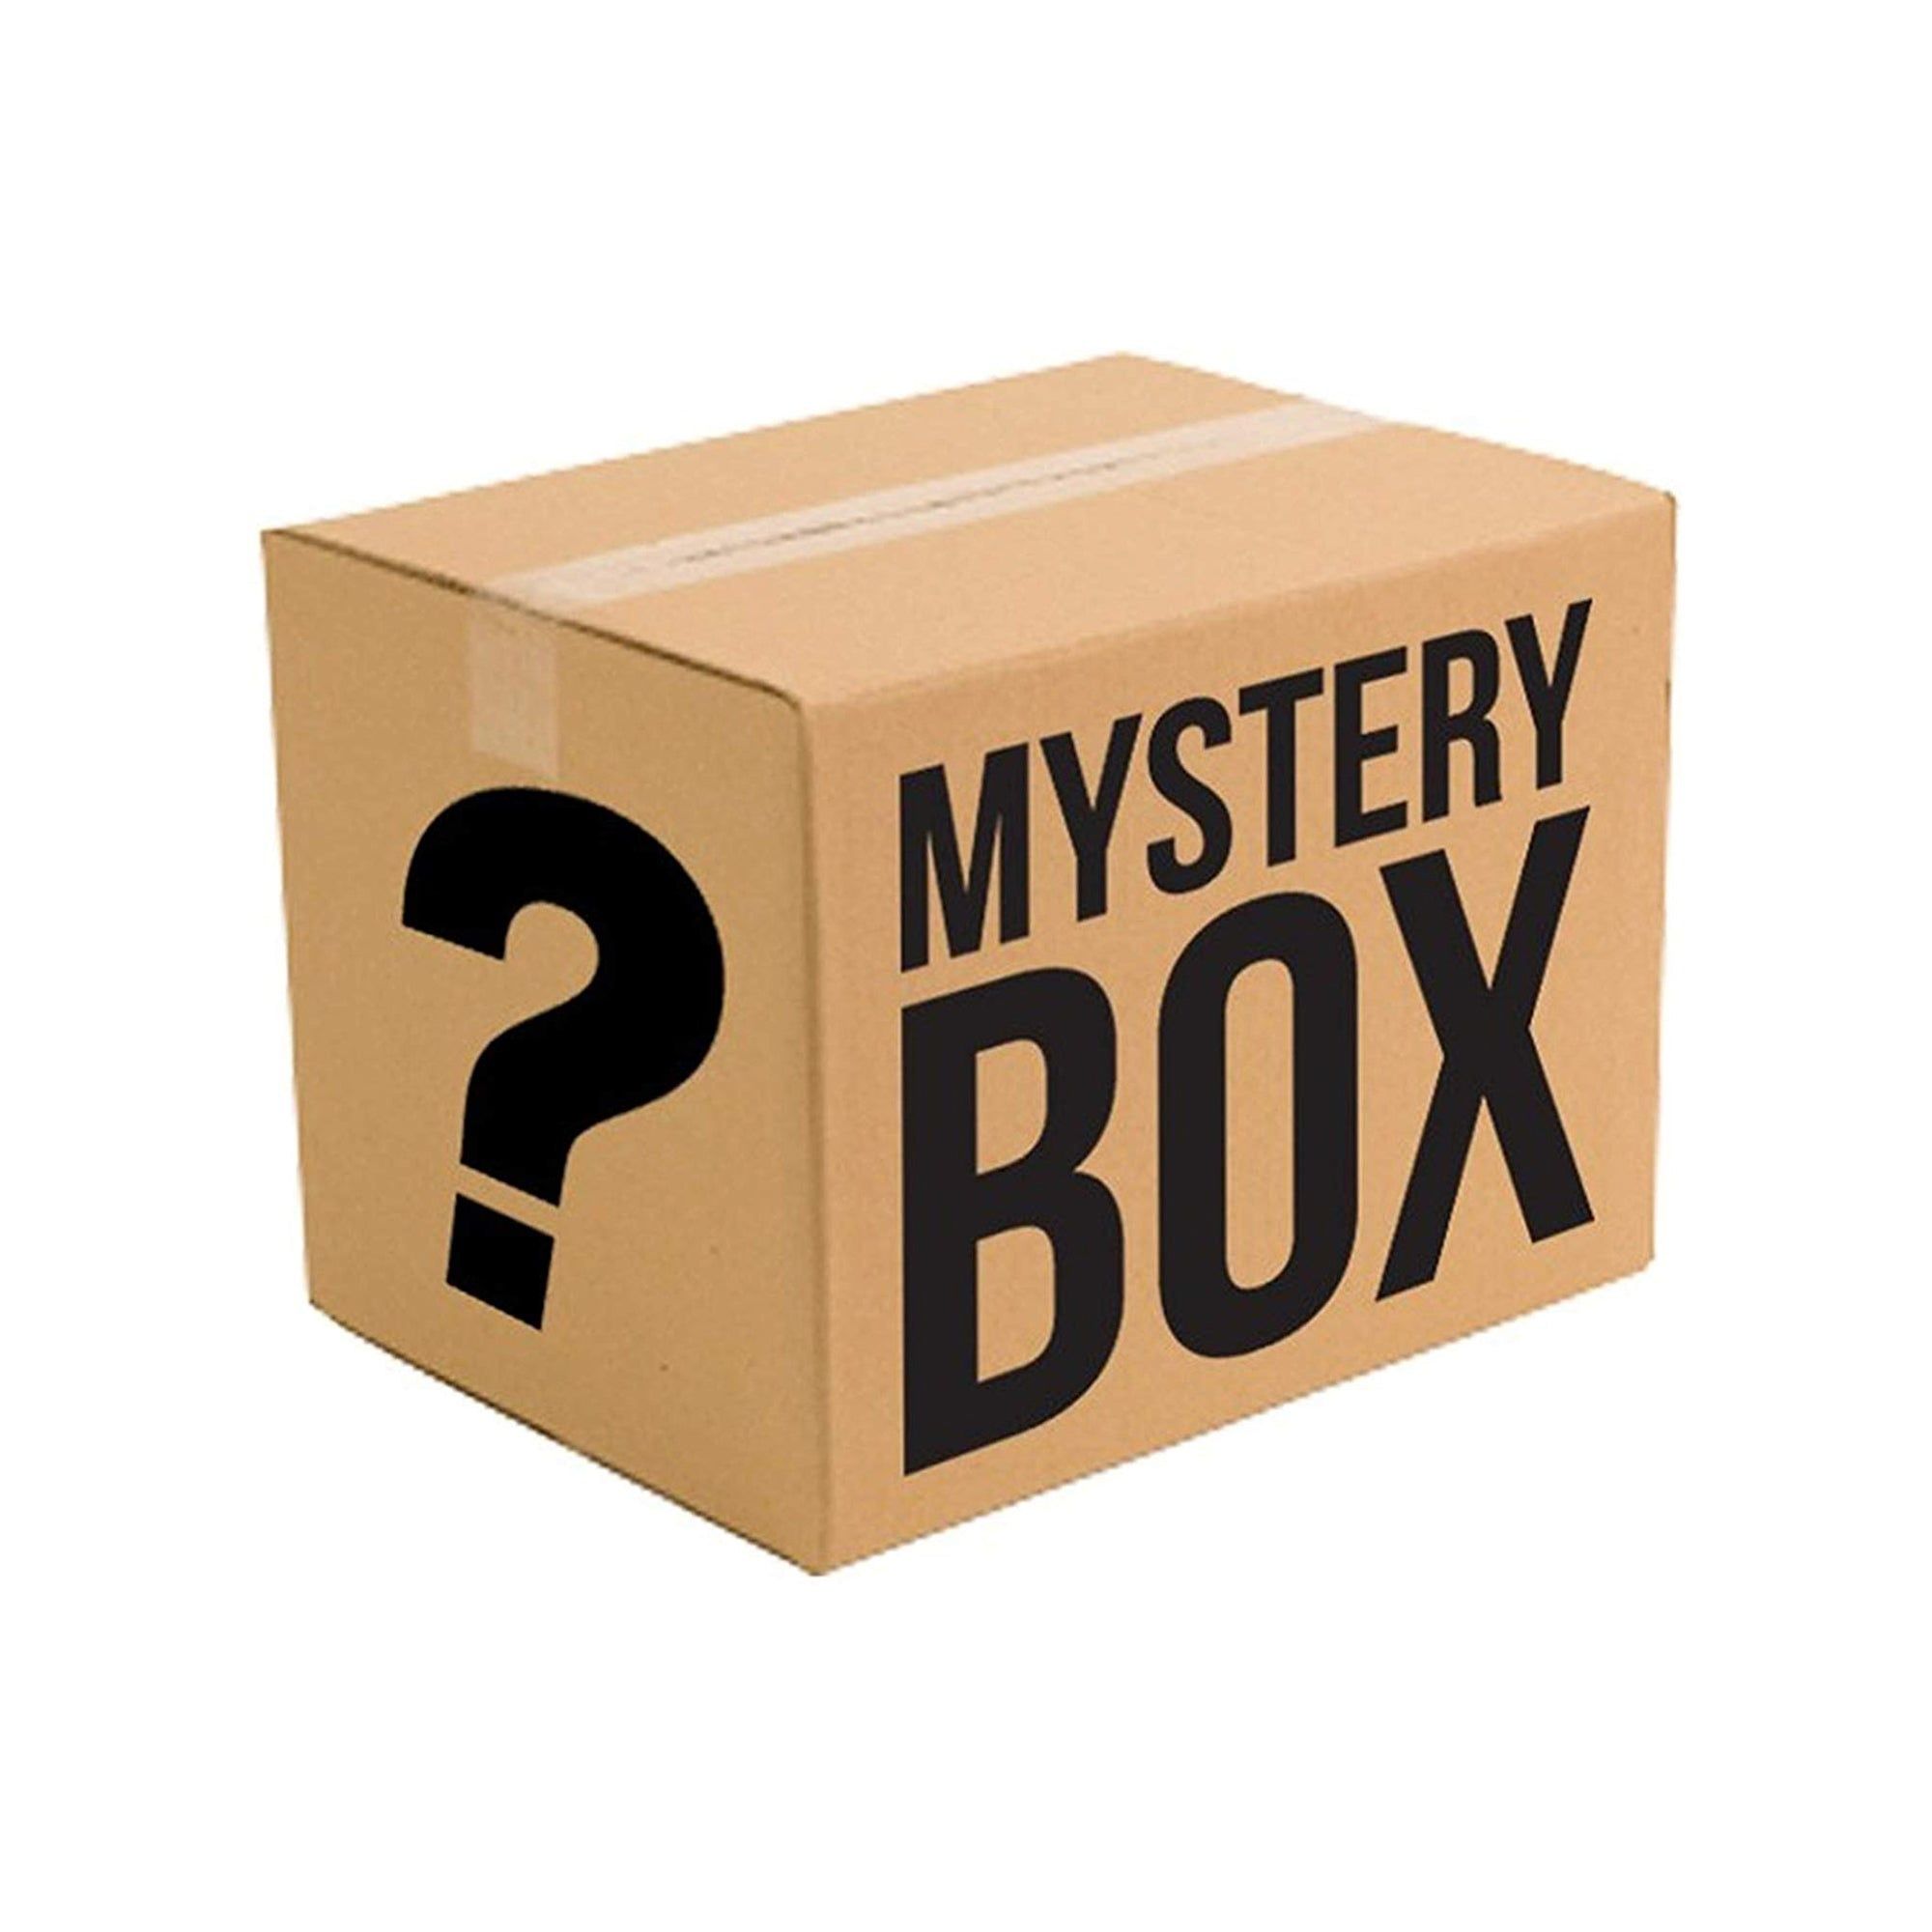 Mistery box:lego ninjago